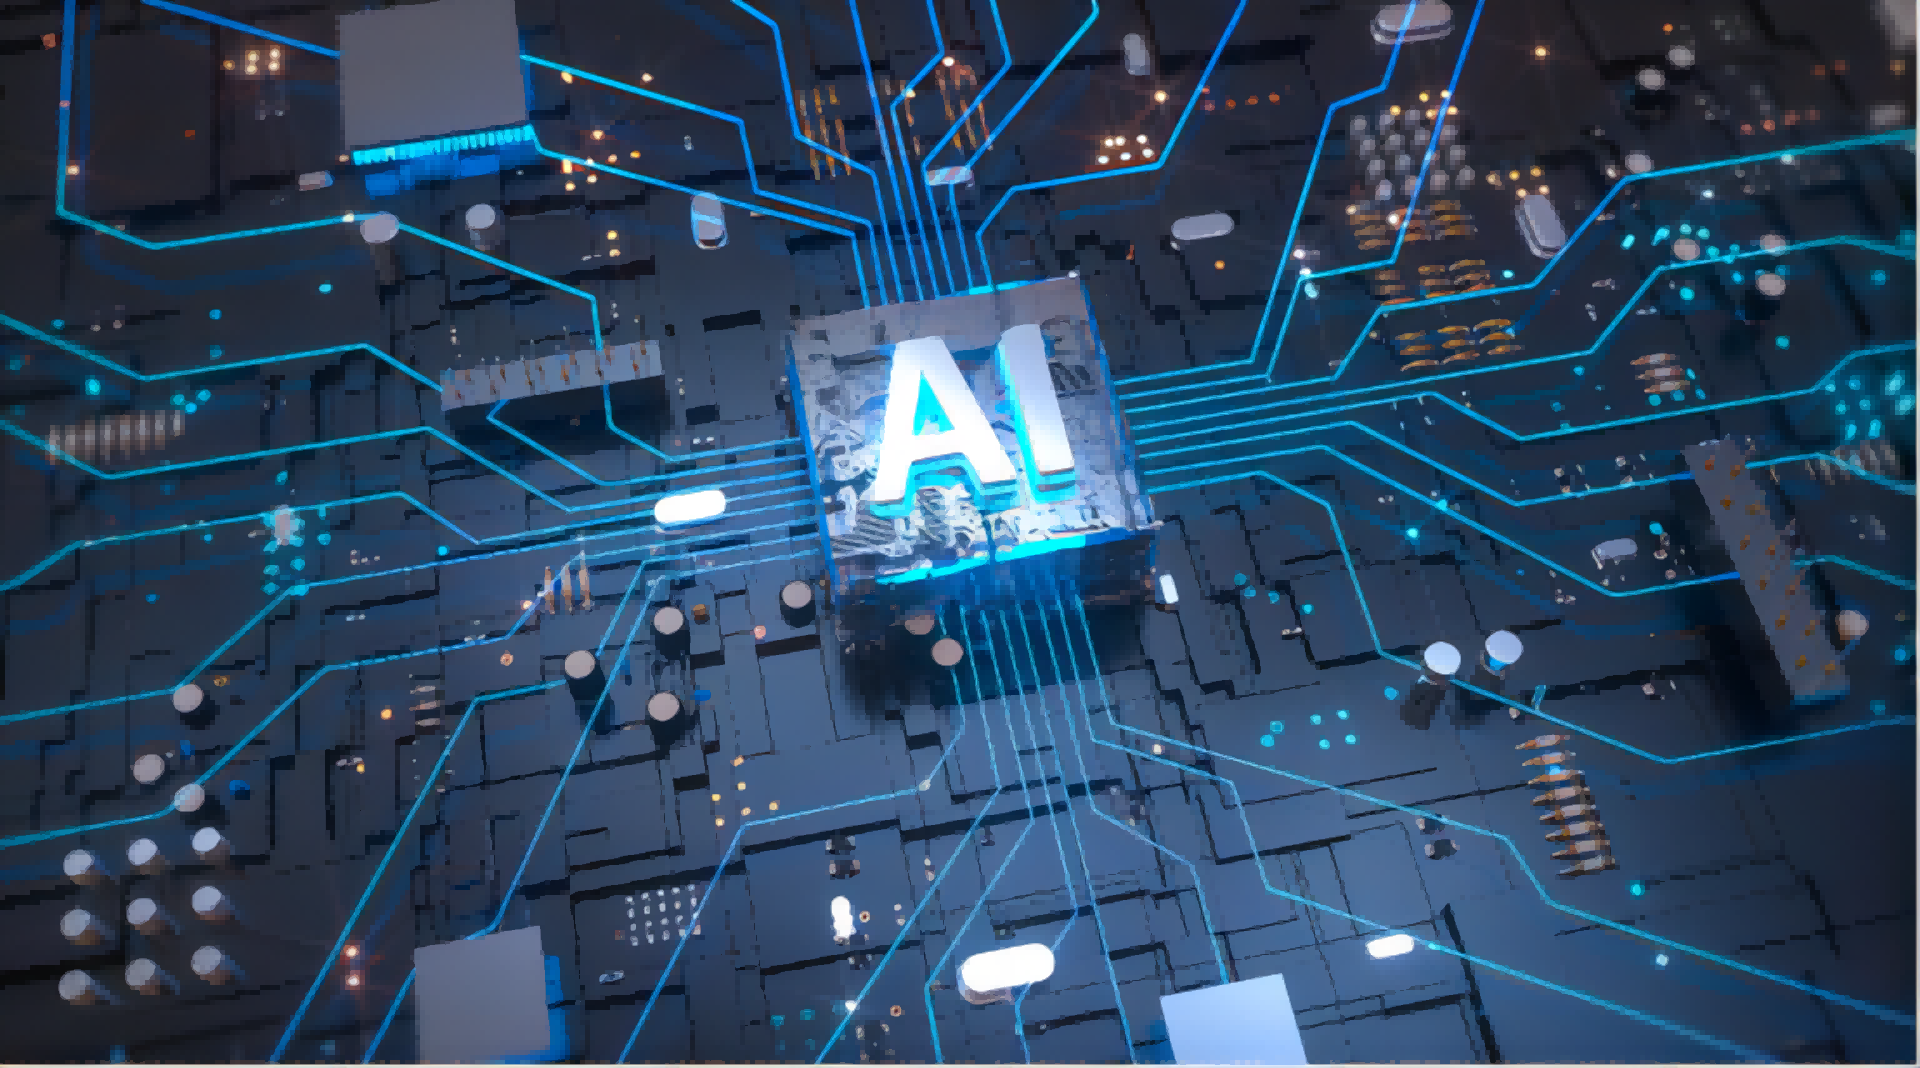 这是一张描绘电路板和集成电路的图片，中心有“AI”字样，代表人工智能，呈现科技感和未来主义风格。